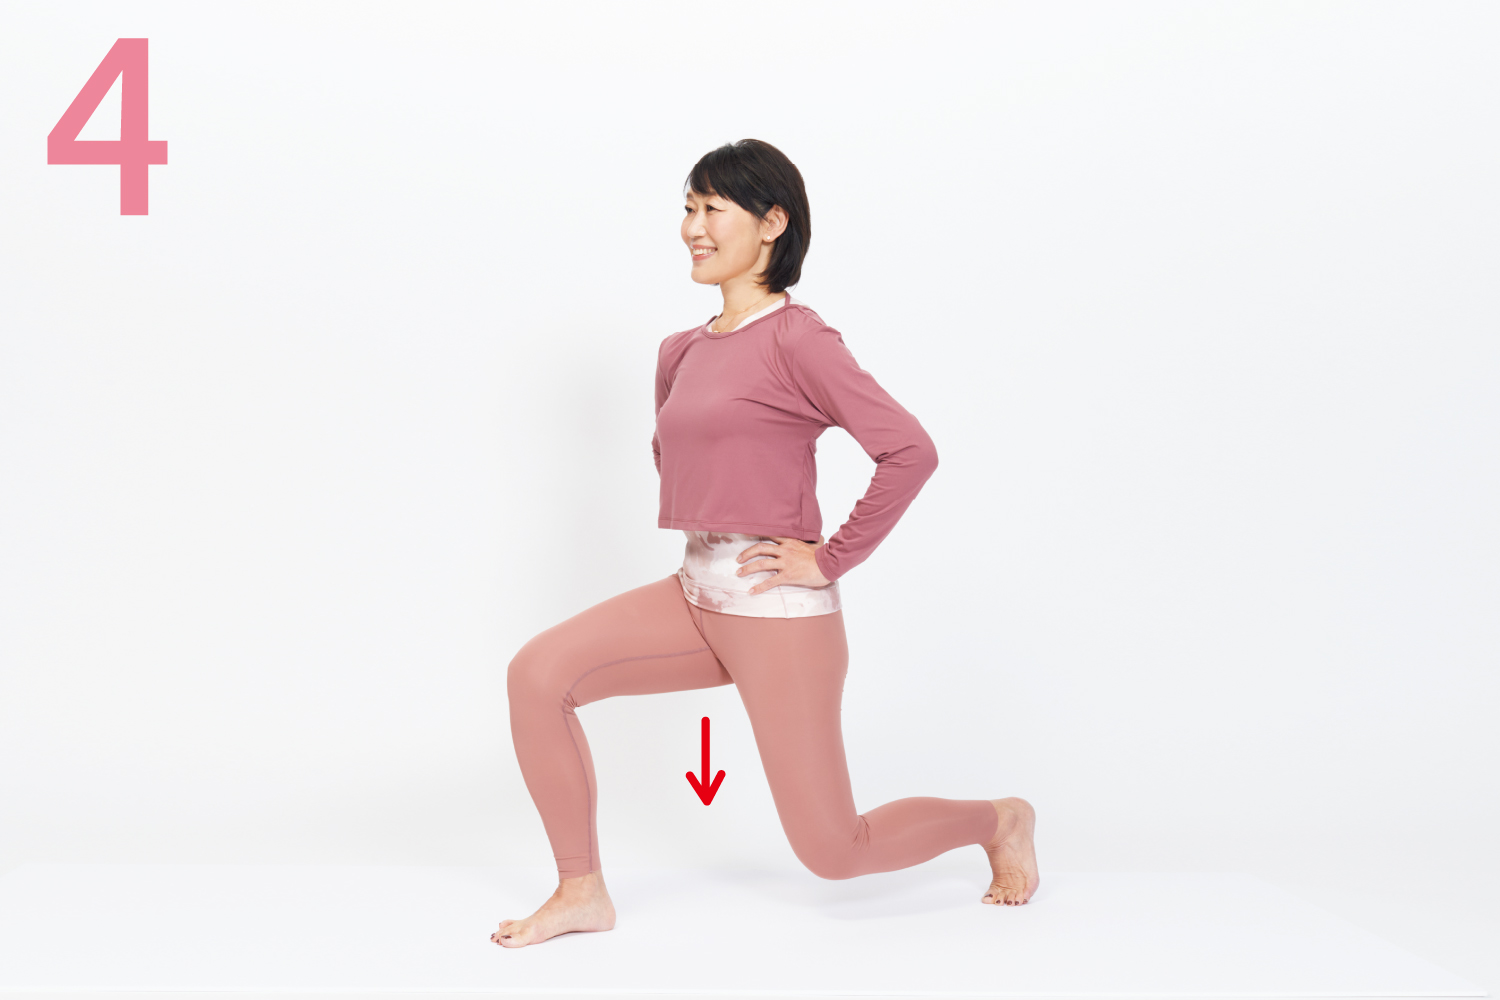 上半身を真っすぐに保ち、股関節を曲げて左右の膝が直角に曲がる程度まで腰を下ろします